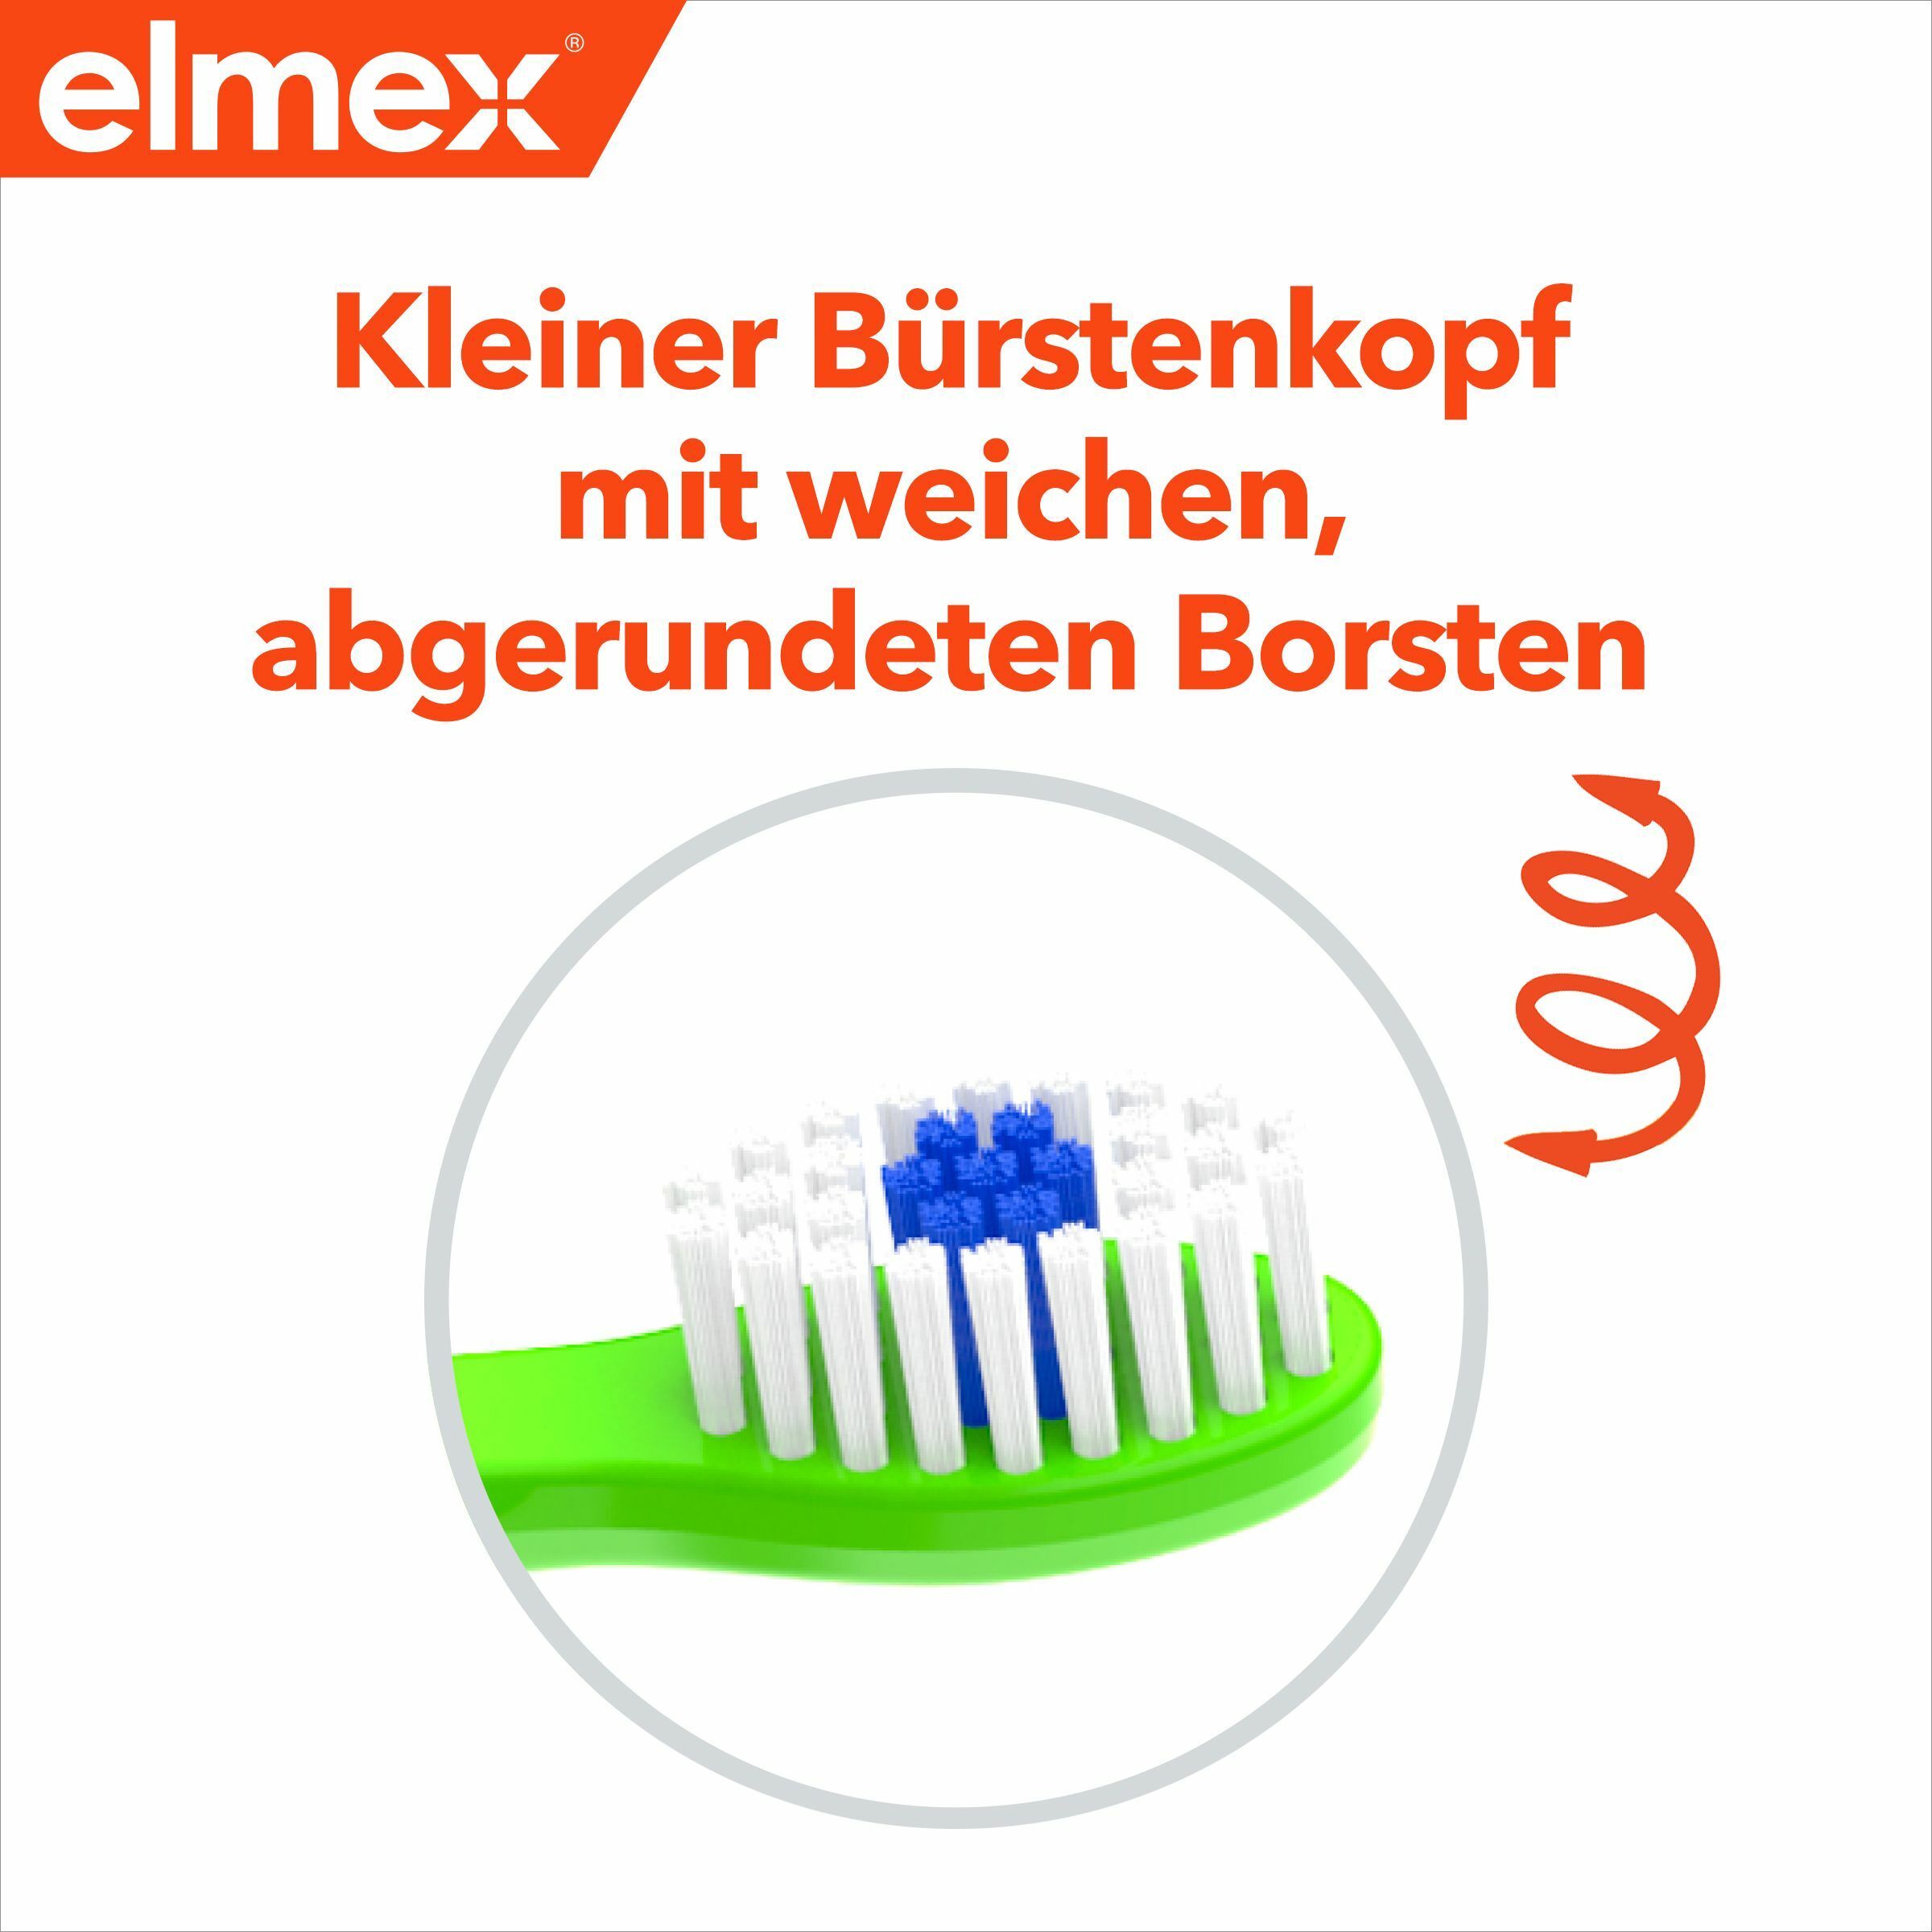 elmex Baby Zahnpflege-Erstausstattung  für Kinder von 0-2 Jahren